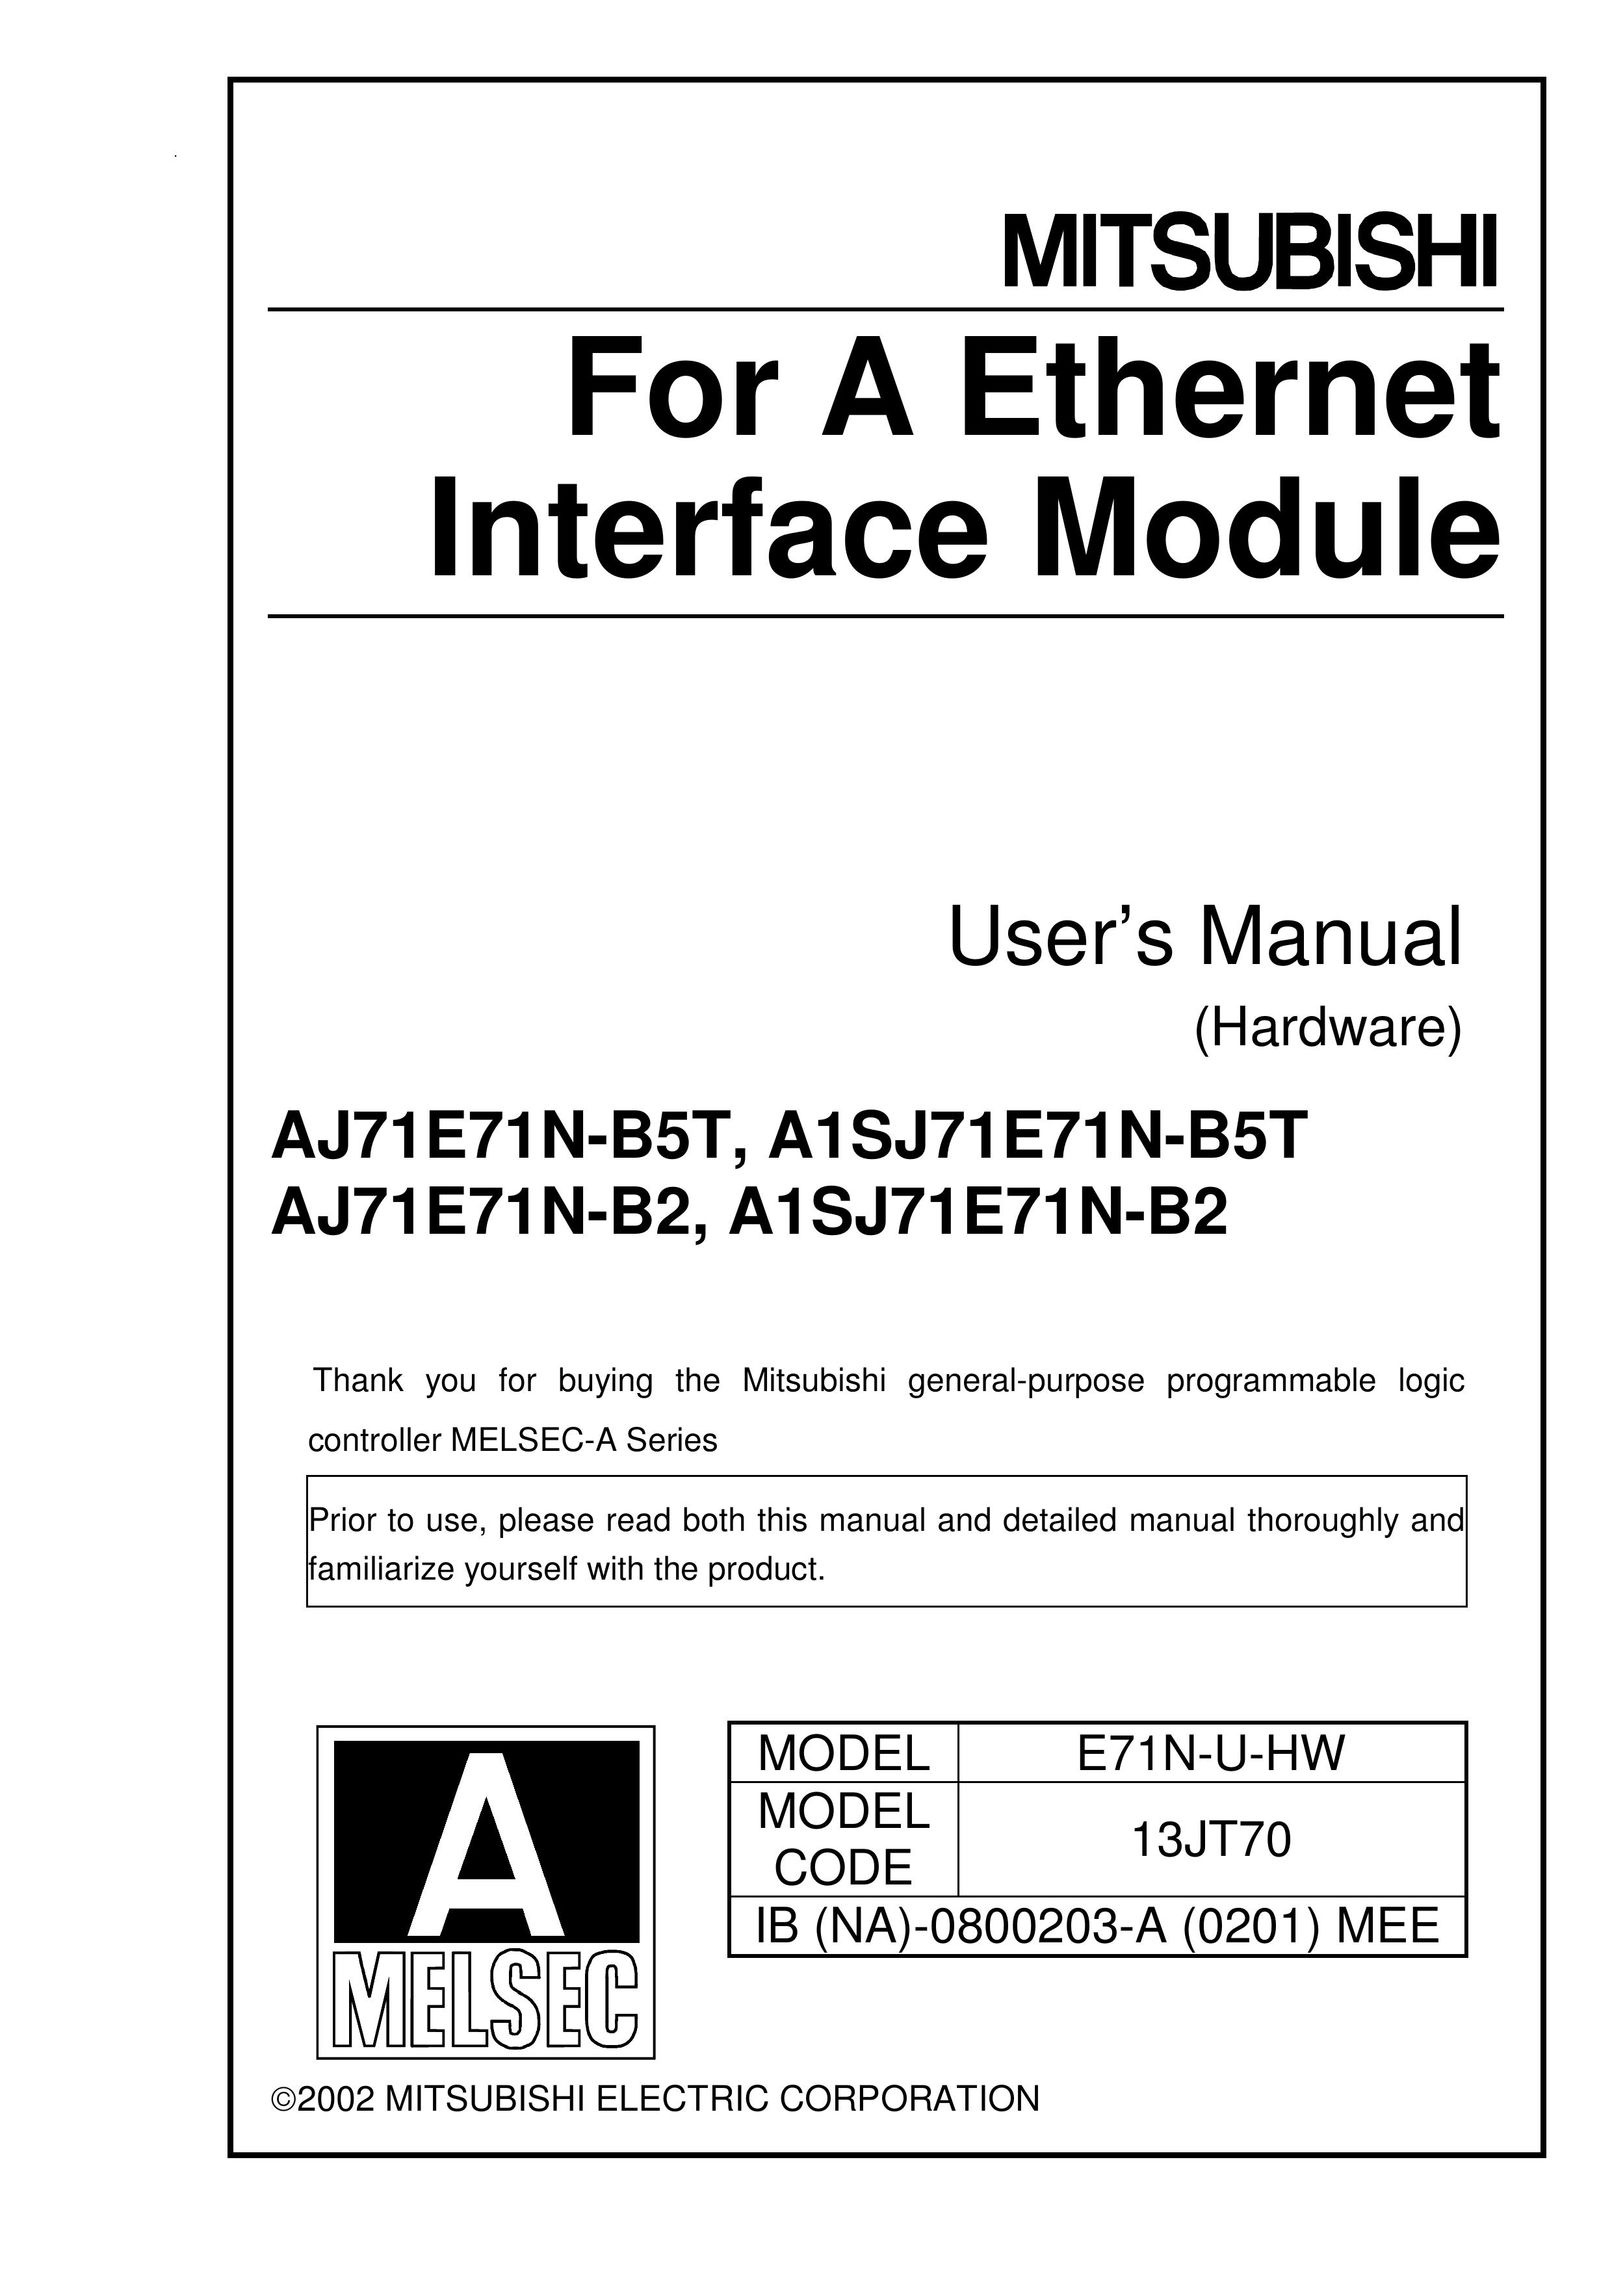 Mitsubishi A1SJ71E71N-B2 Network Card User Manual